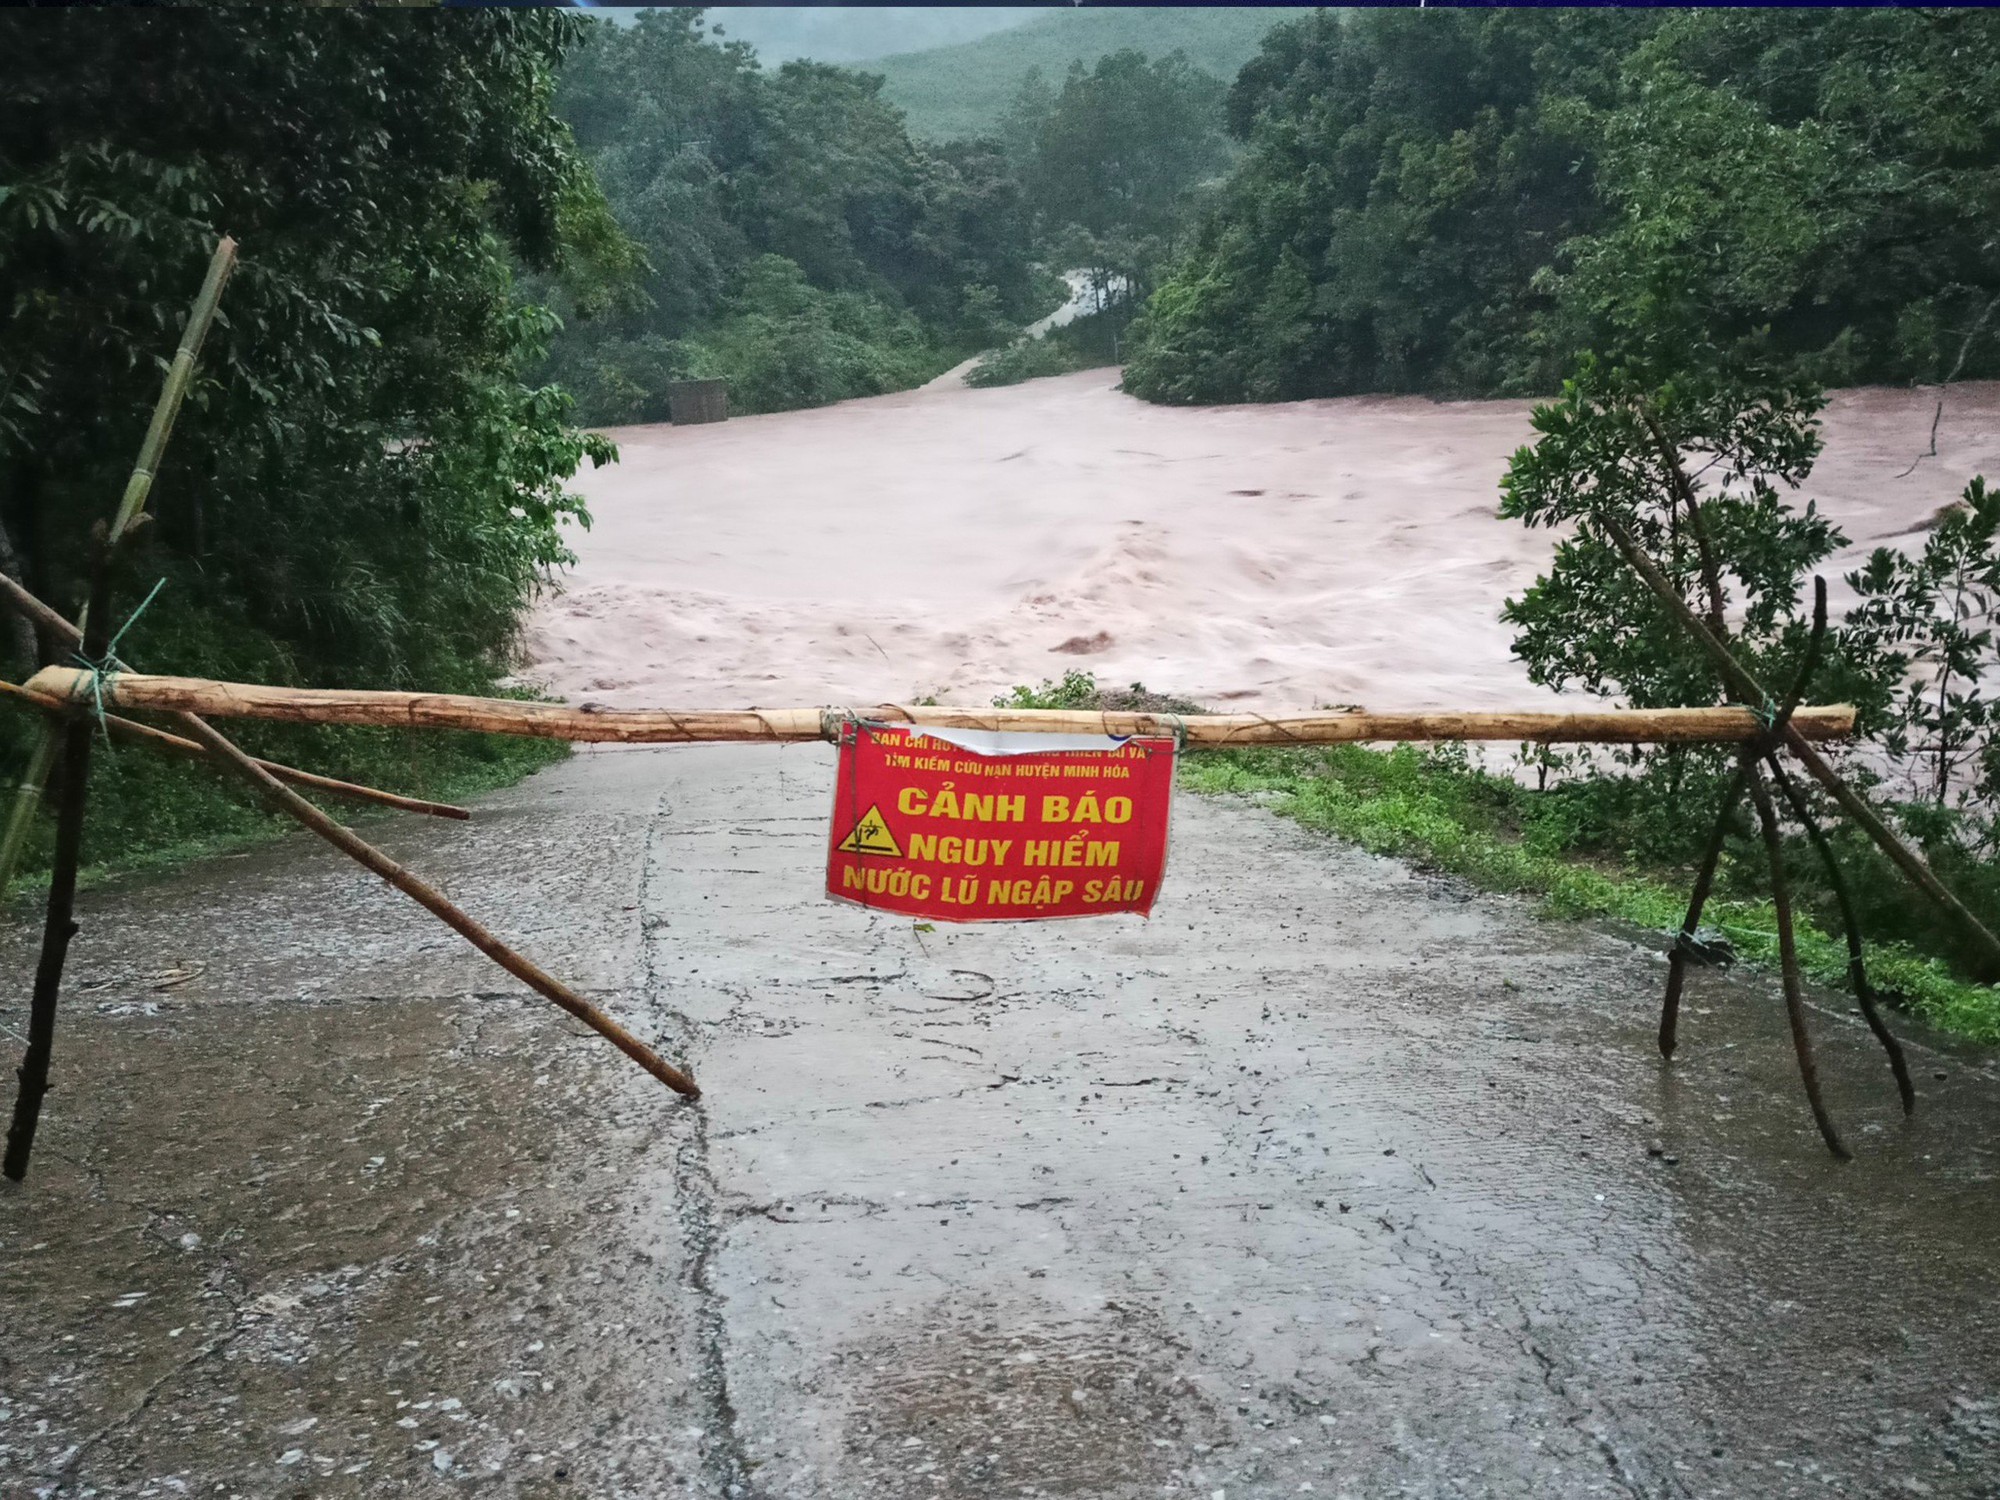 Mưa lớn gây sạt lở, chia cắt nhiều khu vực ở huyện miền núi Quảng Bình - Ảnh 2.